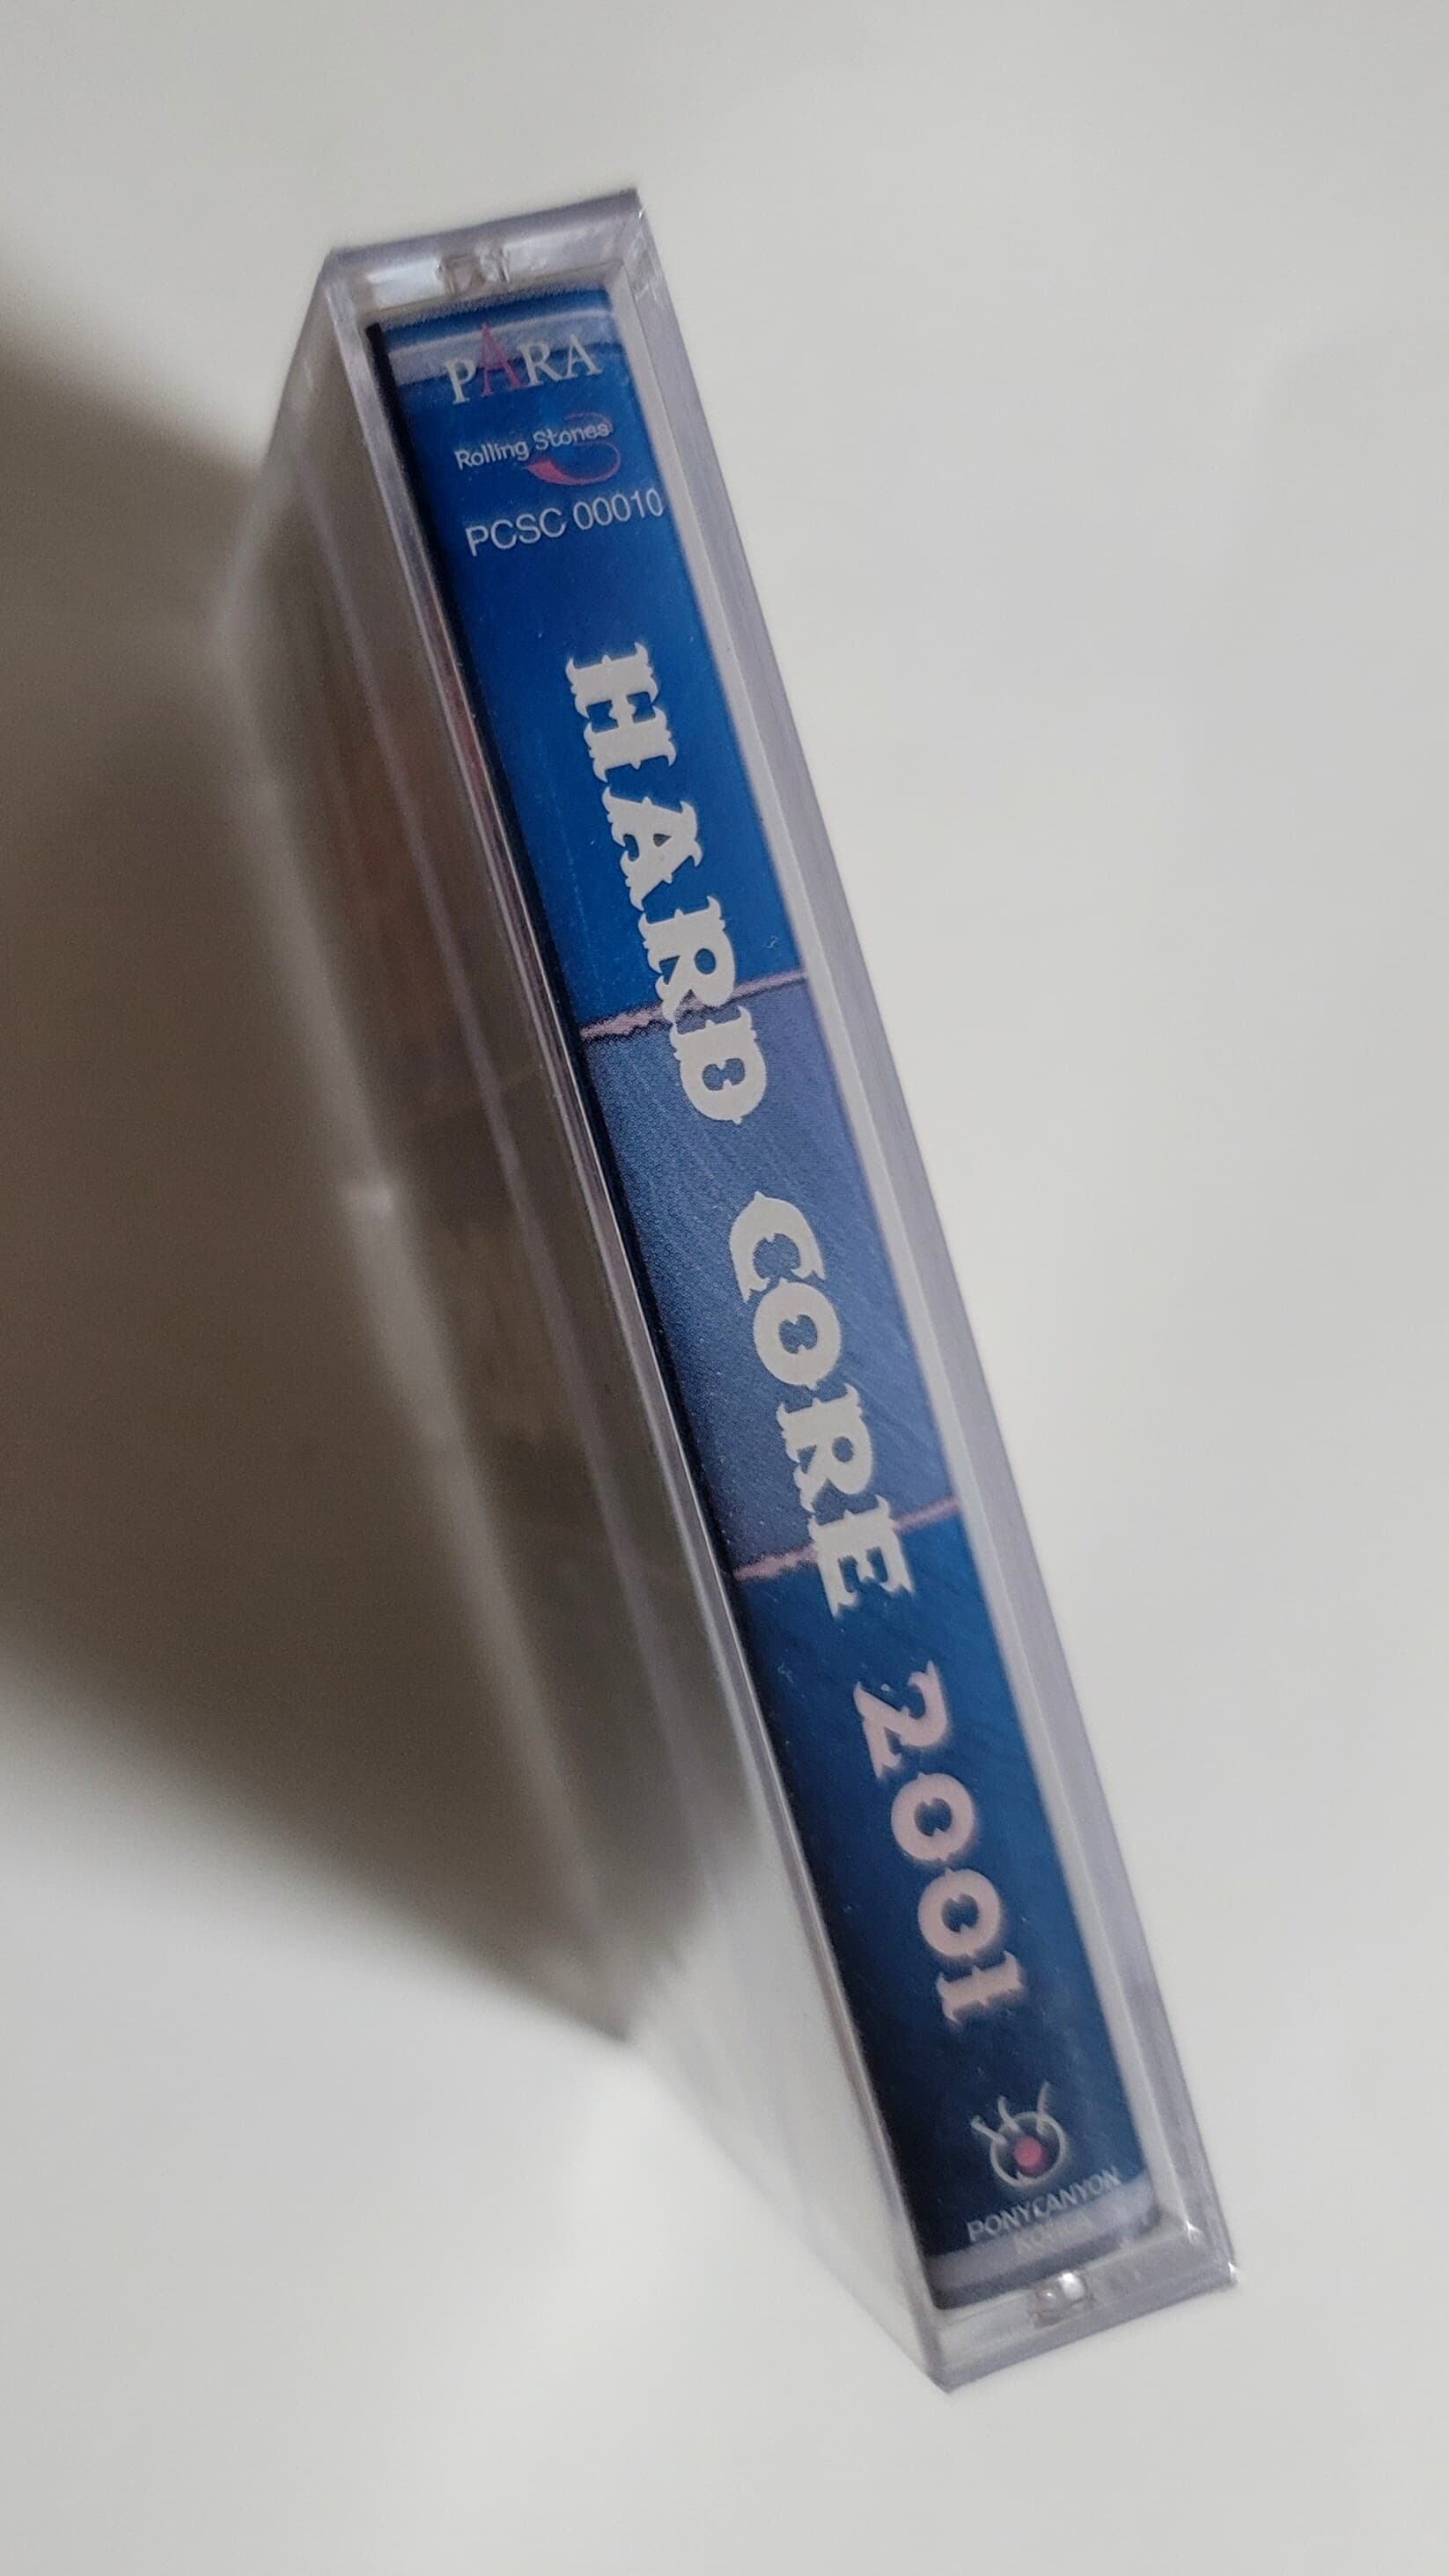 (미개봉 카세트테이프) V.A - Hard Core 2001 (하드코어 2001)